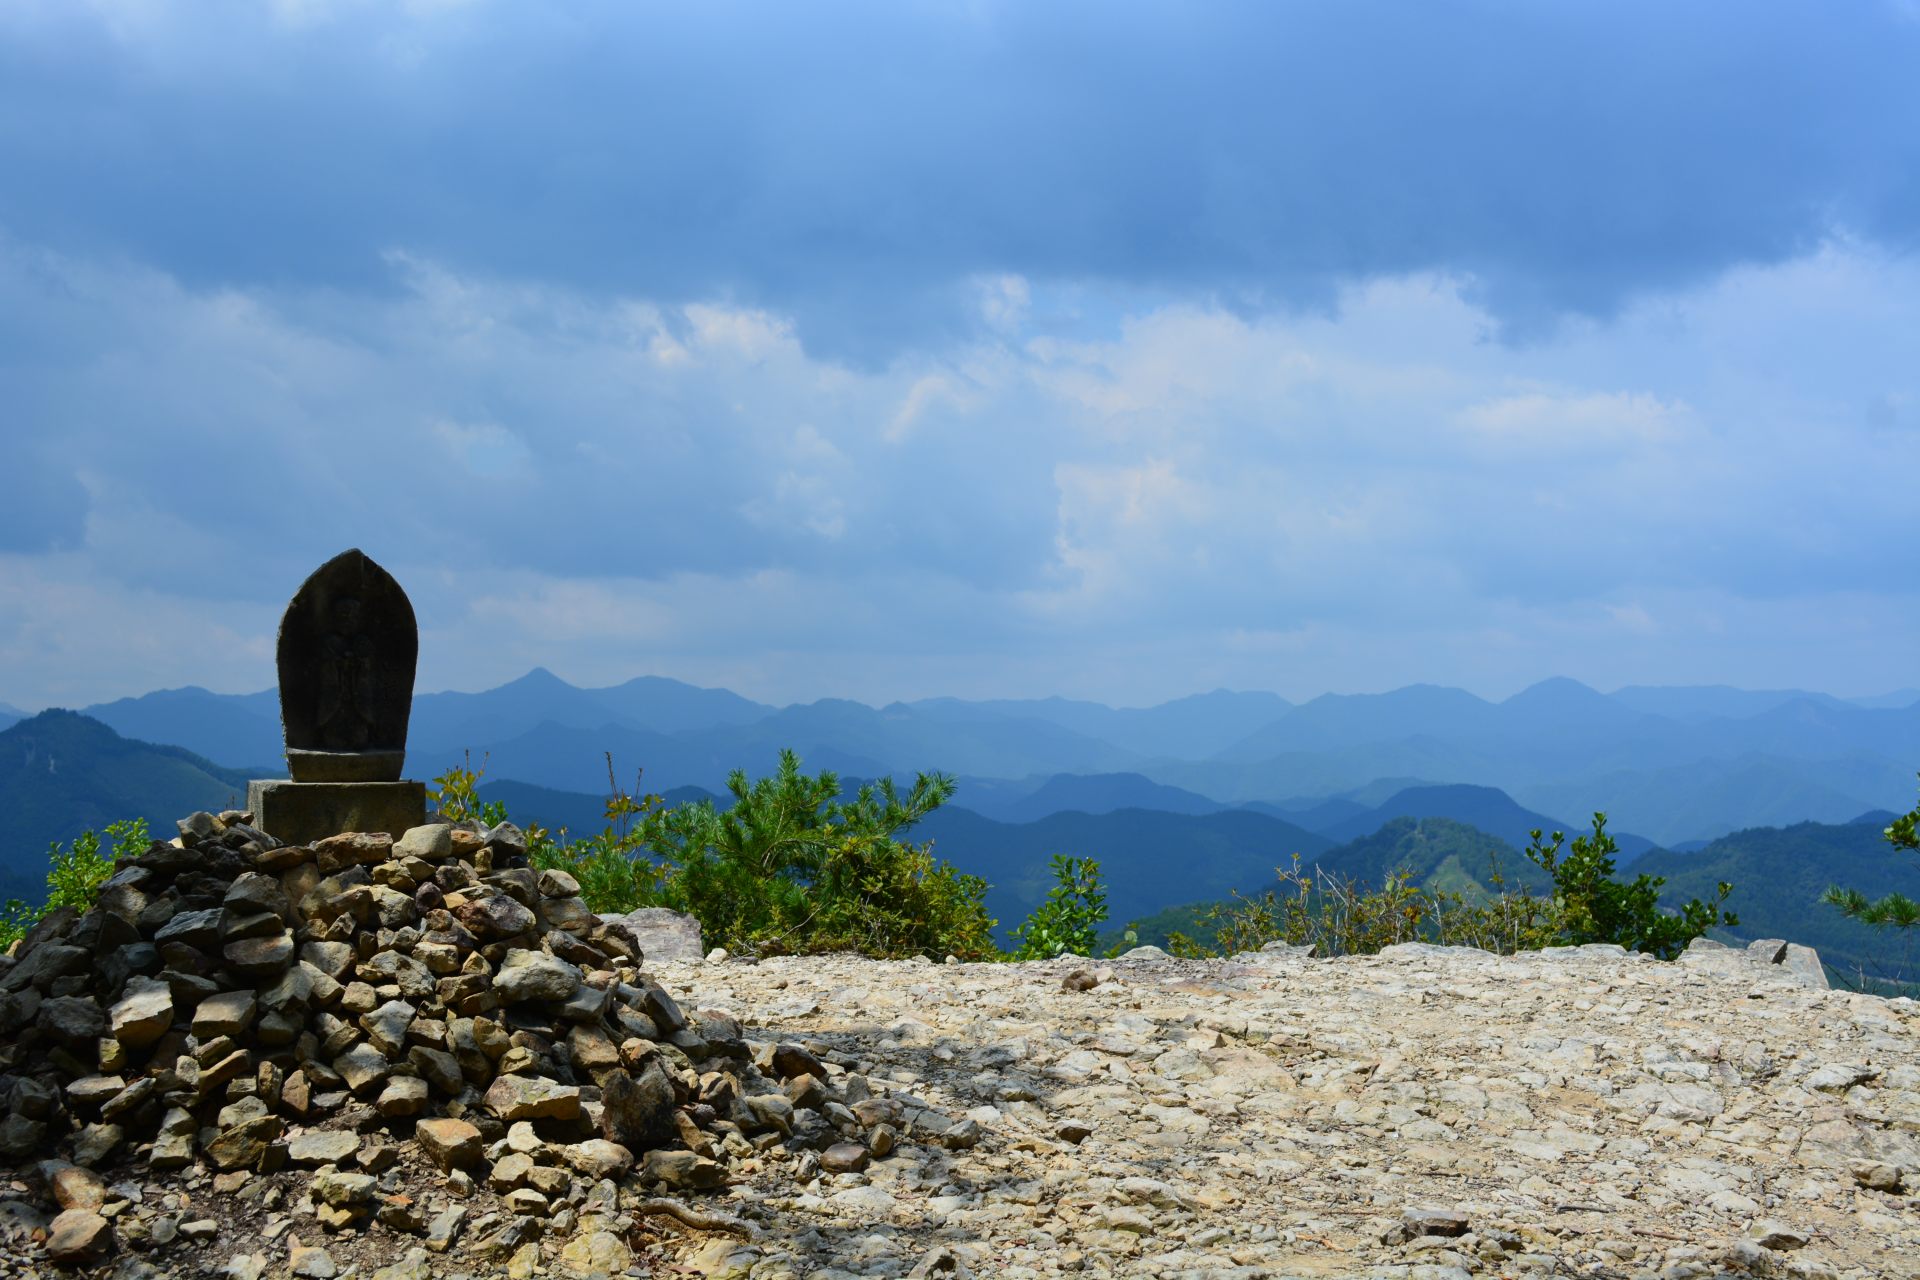 熊野の山々を一望できる「百間ぐら」。頂上のお地蔵様が目印。
©和歌山県観光連盟